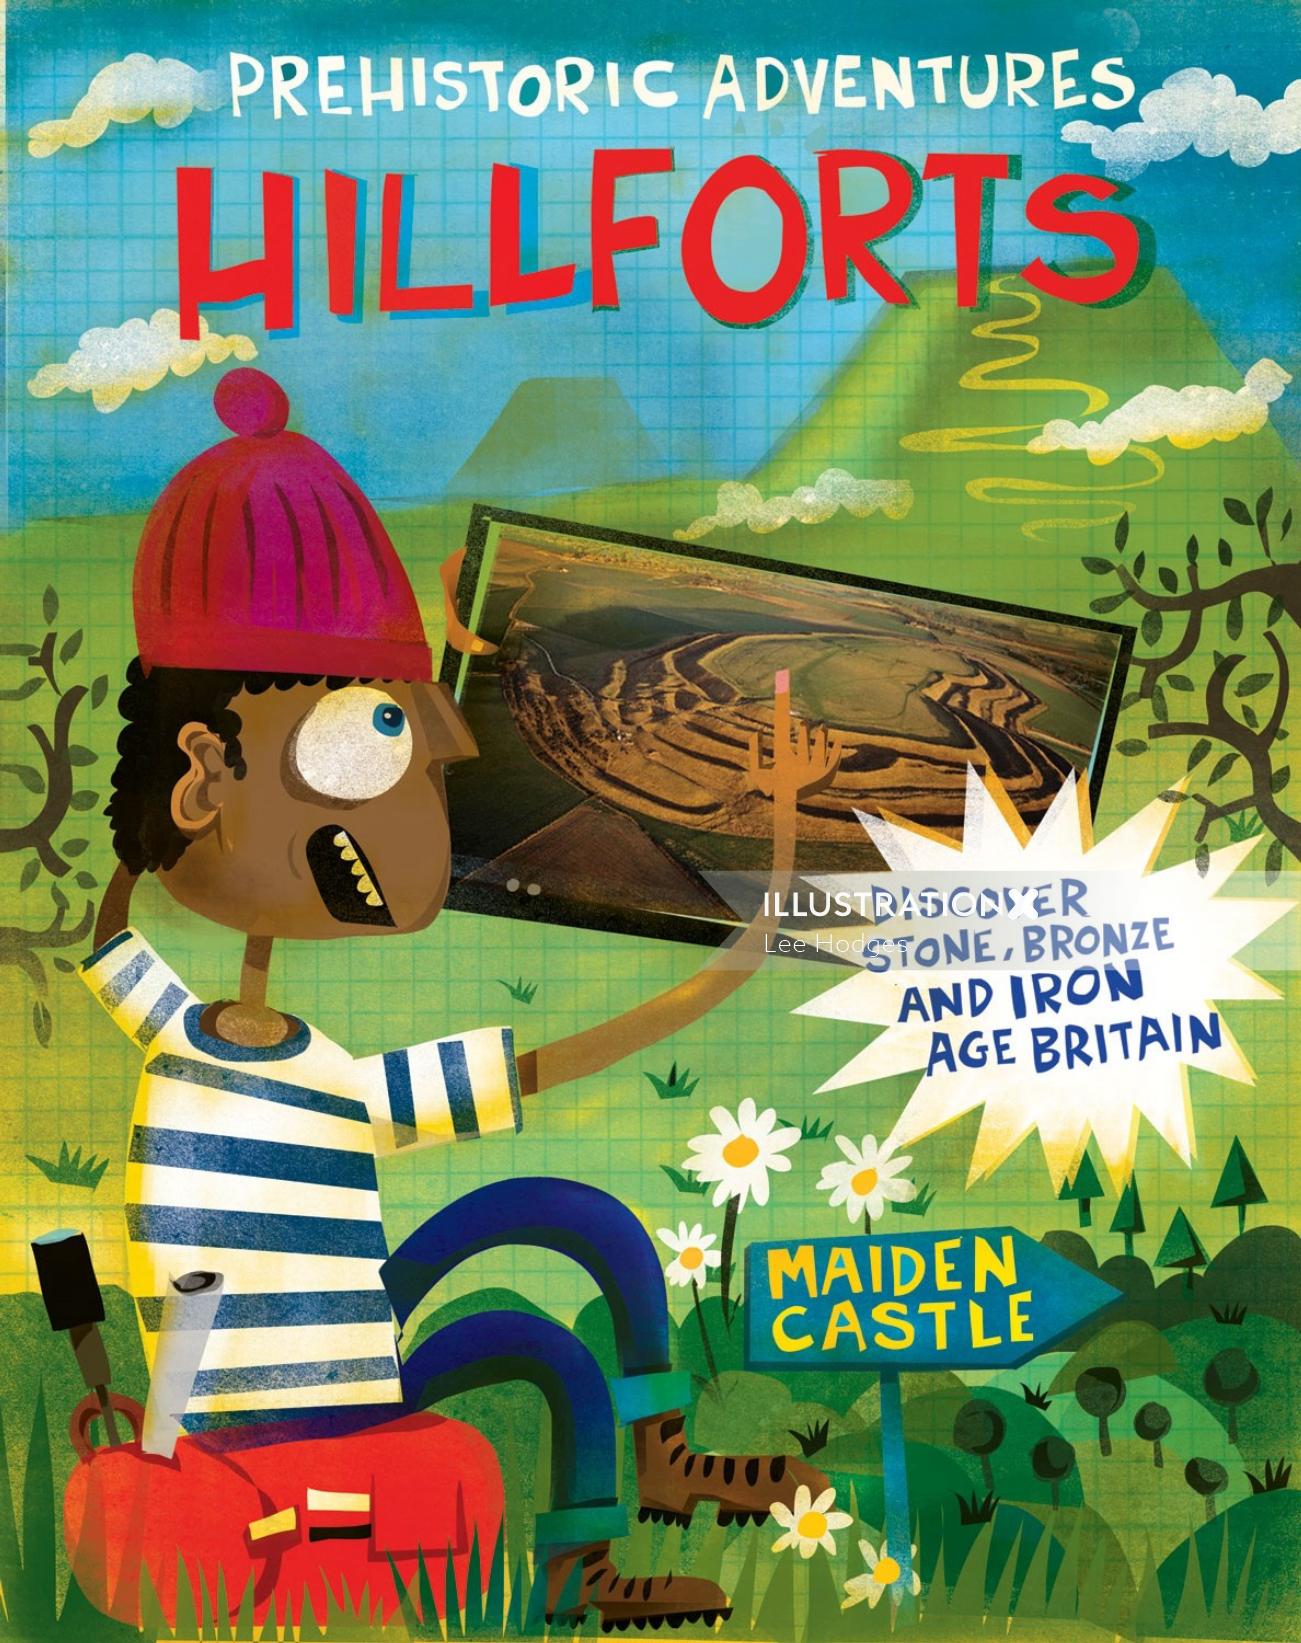 Aventures préhistoriques : Illustration du livre Hill Forts